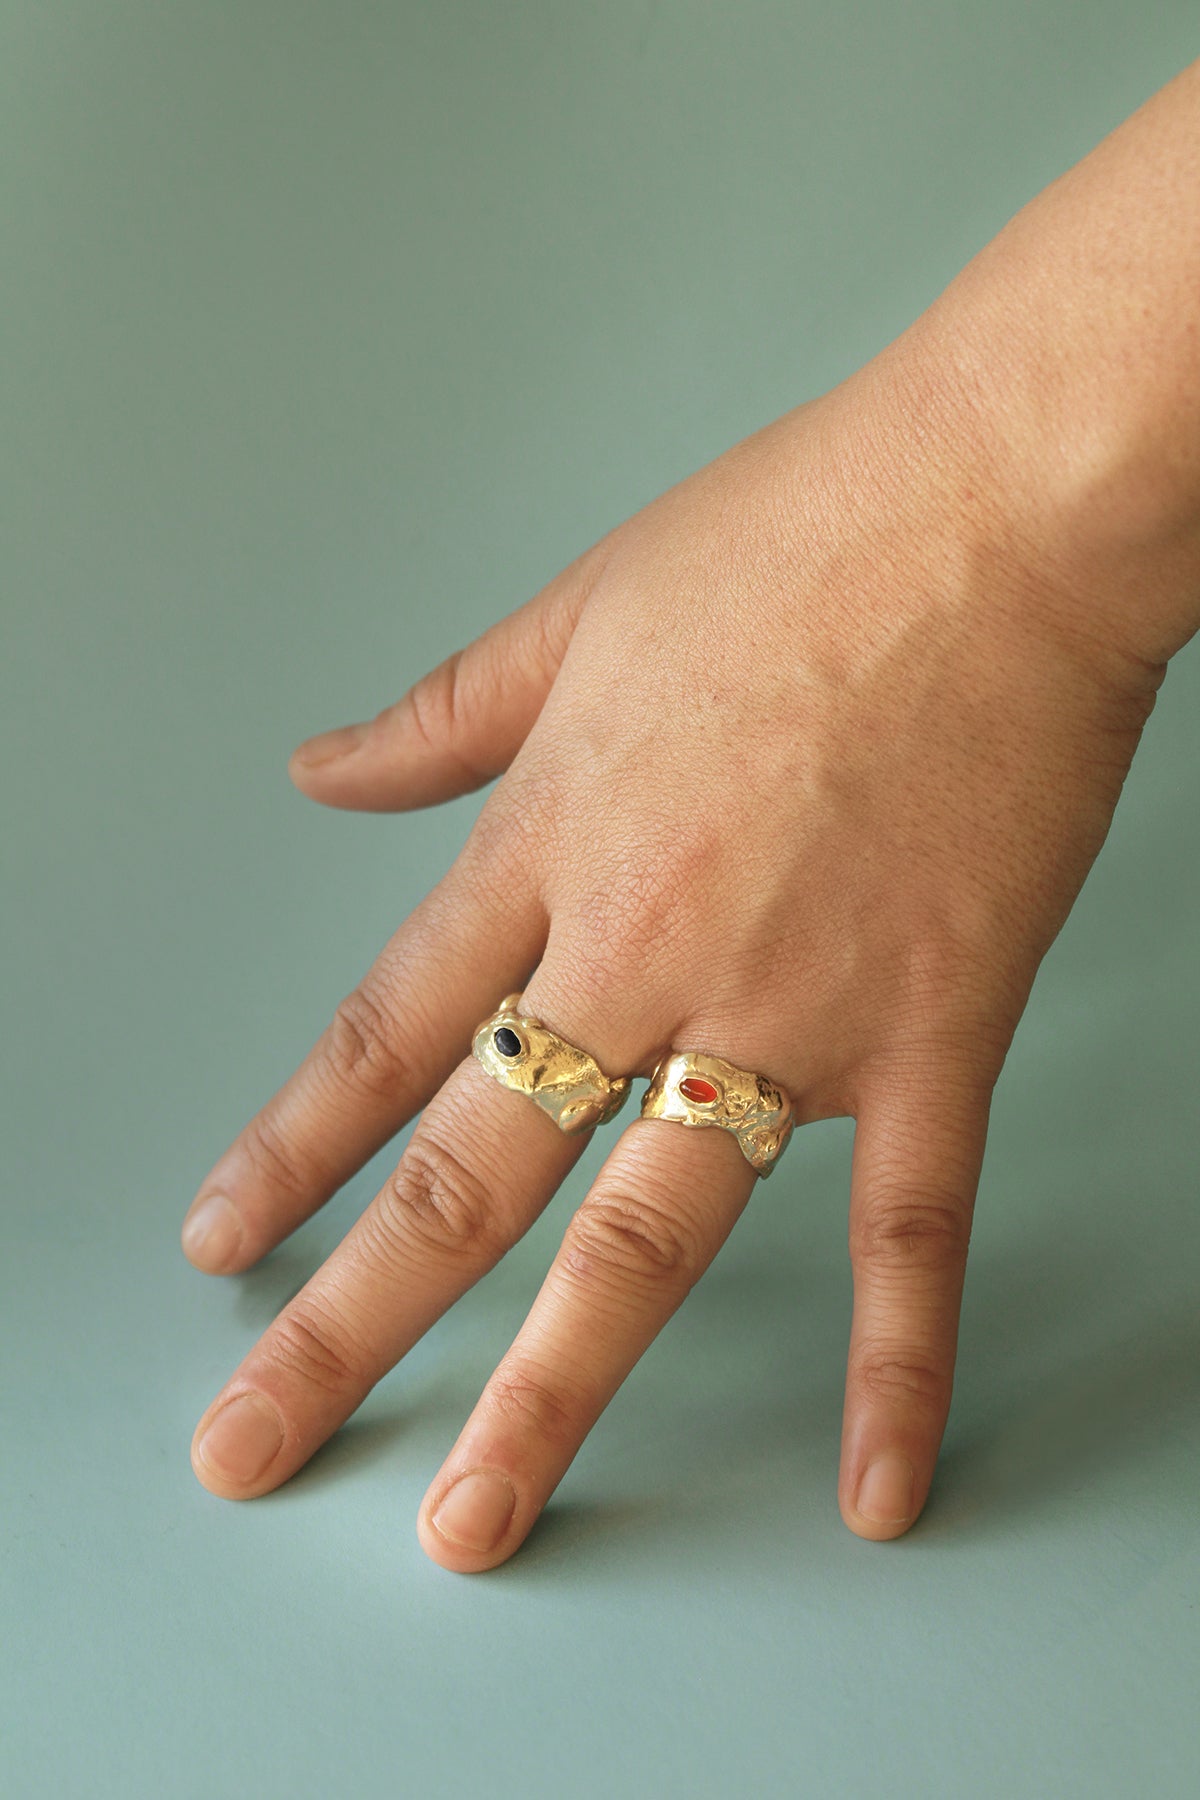 NEBULA // bague en or - ORA-C jewelry - bijoux faits à la main par Caroline Pham, designer indépendante basée à Montréal